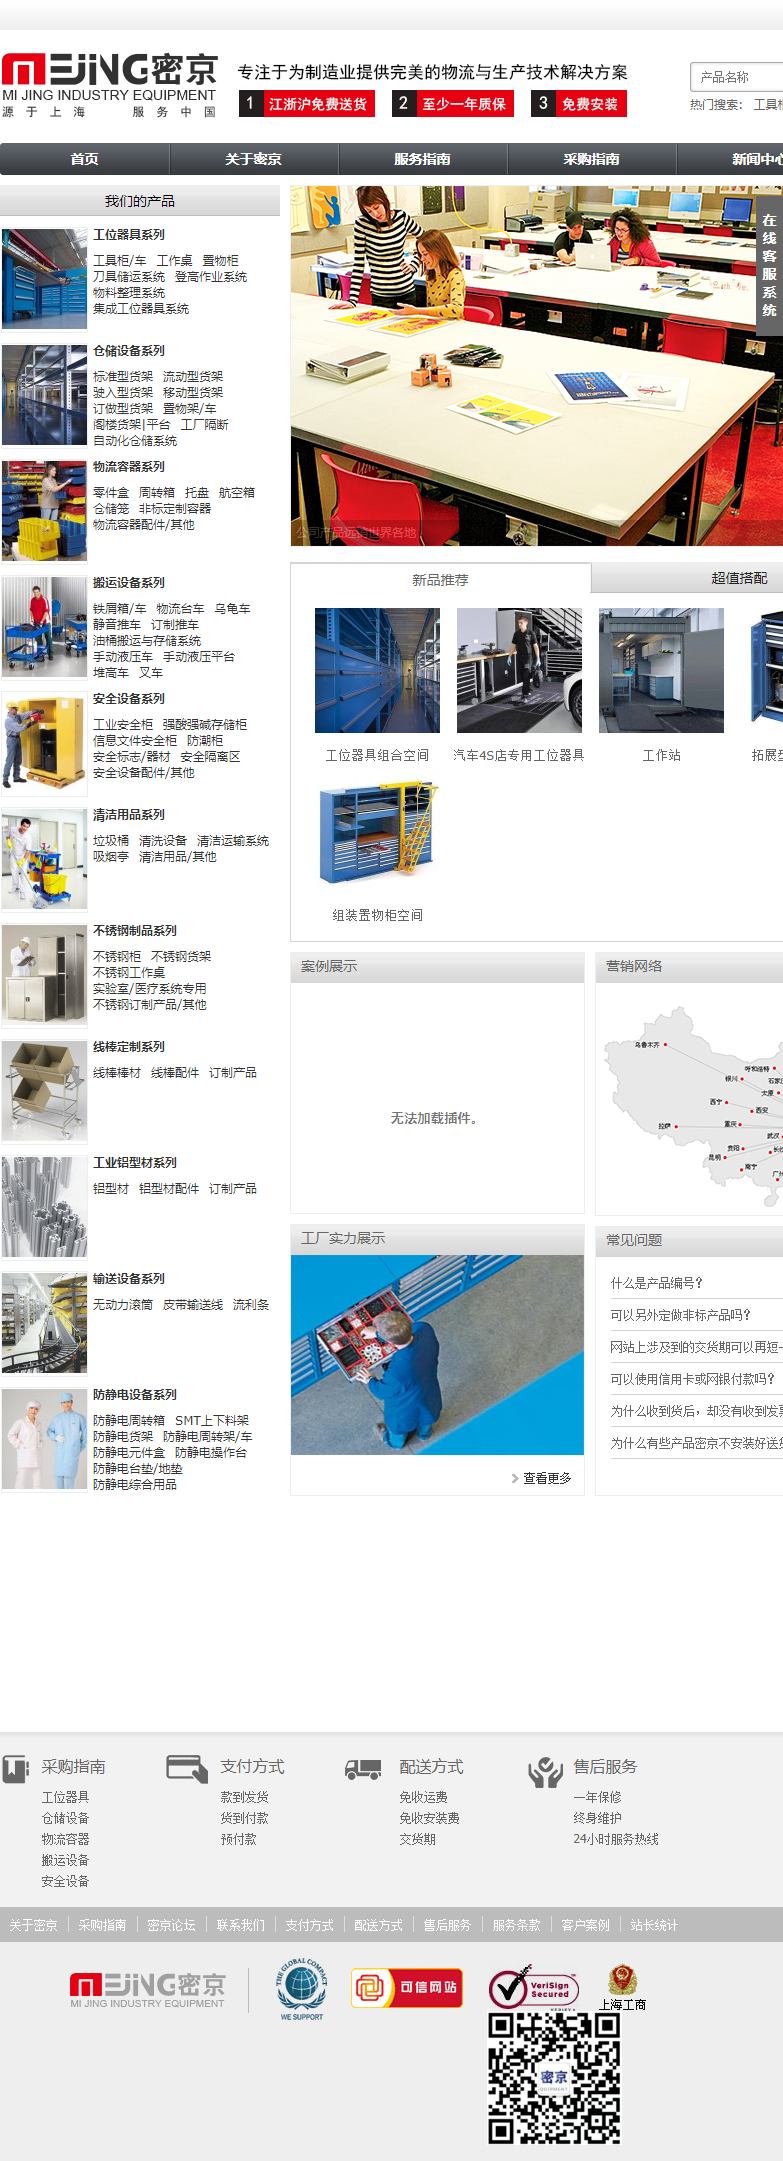 上海密京工业设备有限公司网站案例